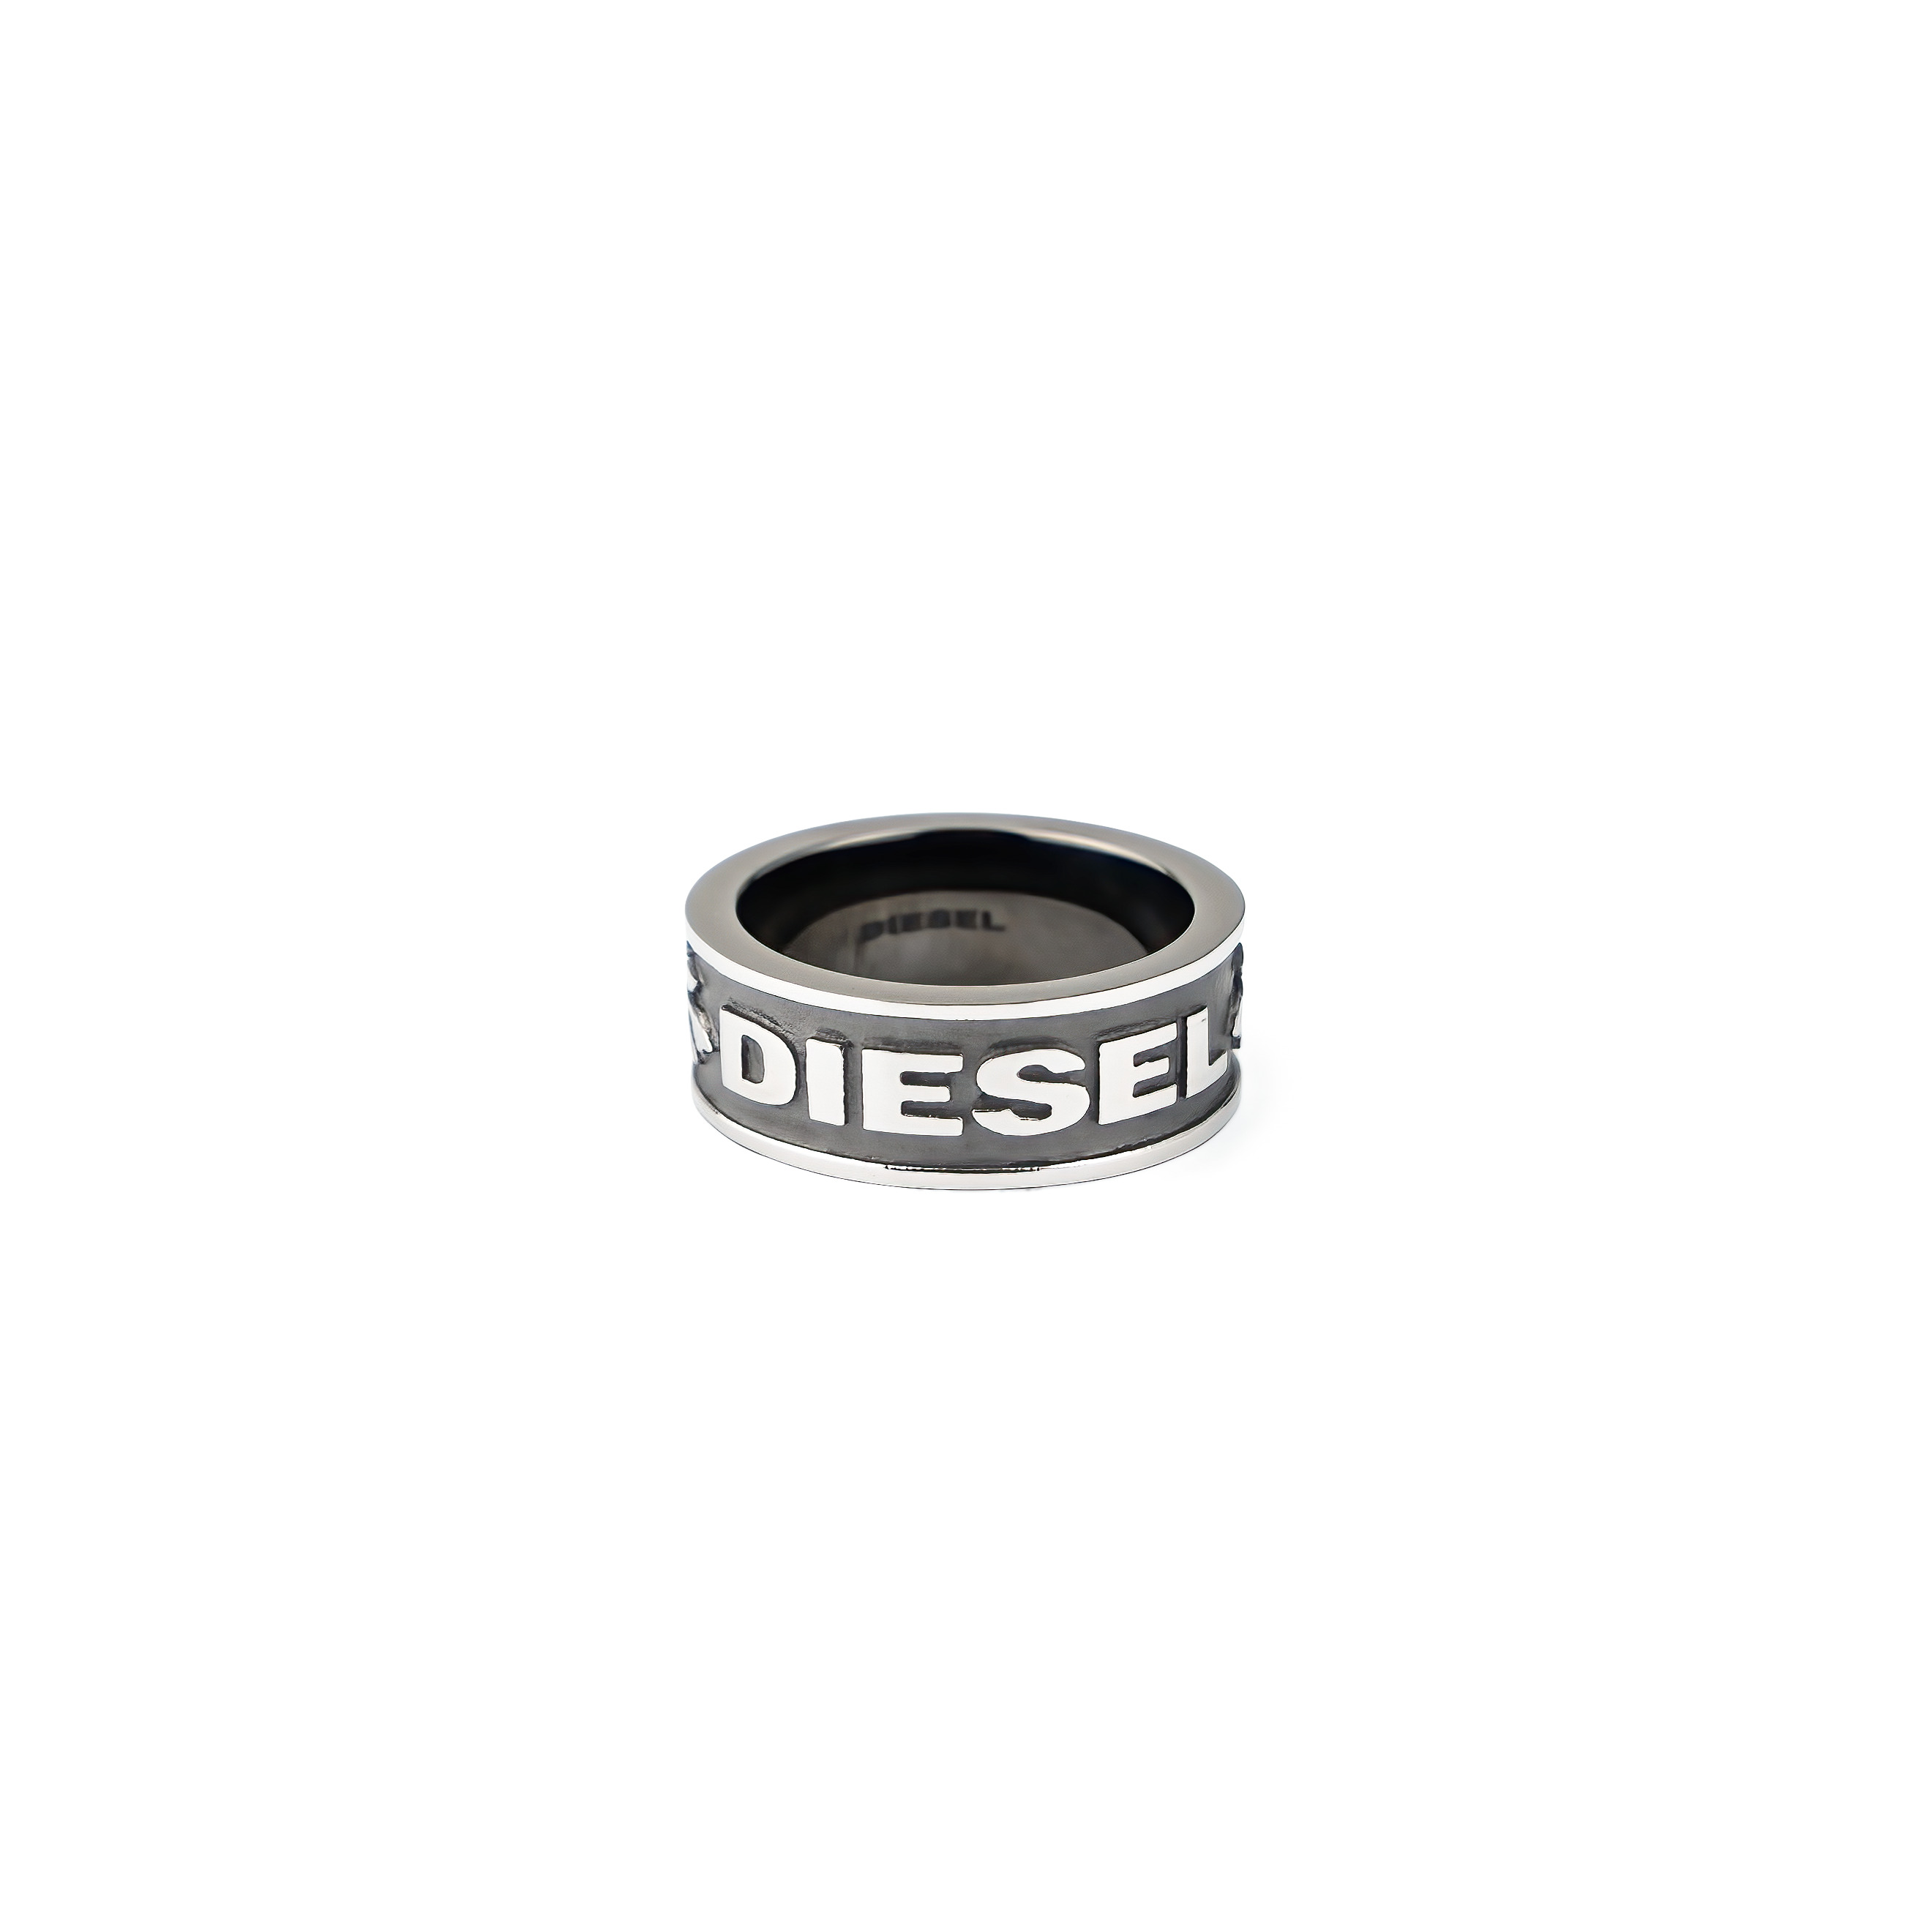 Diesel Ring – buy at Poison Drop online store, SKU 48584.